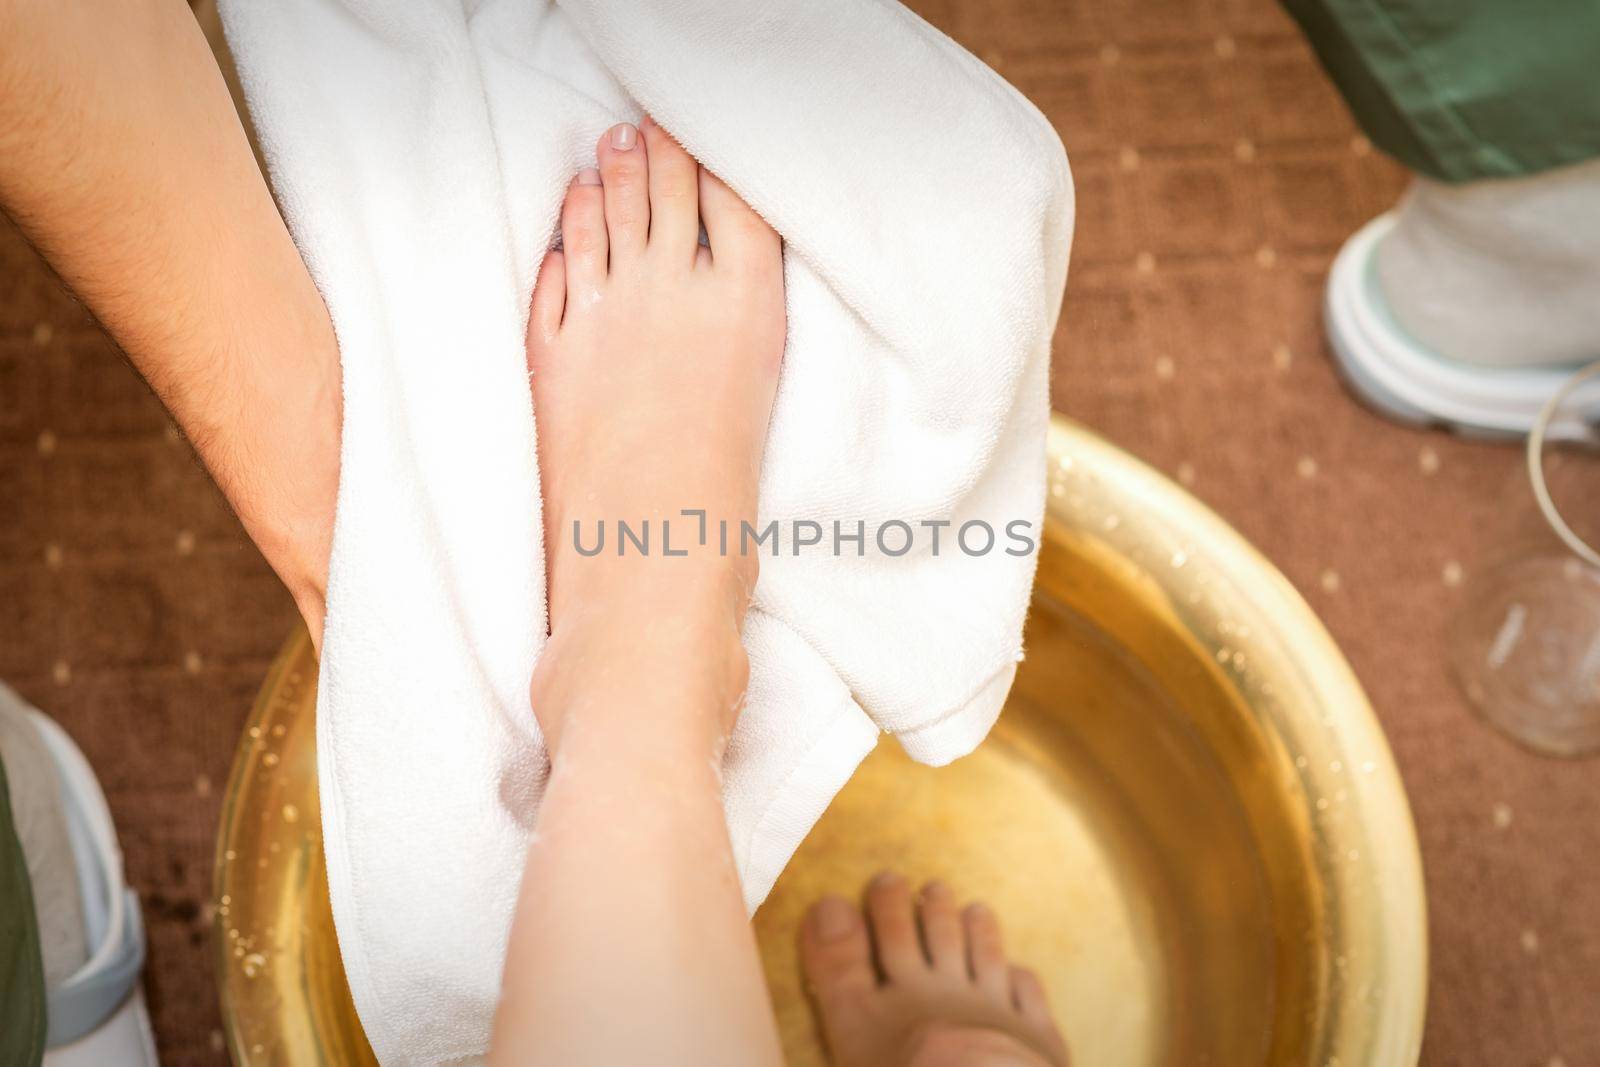 Therapist drying leg with towel by okskukuruza